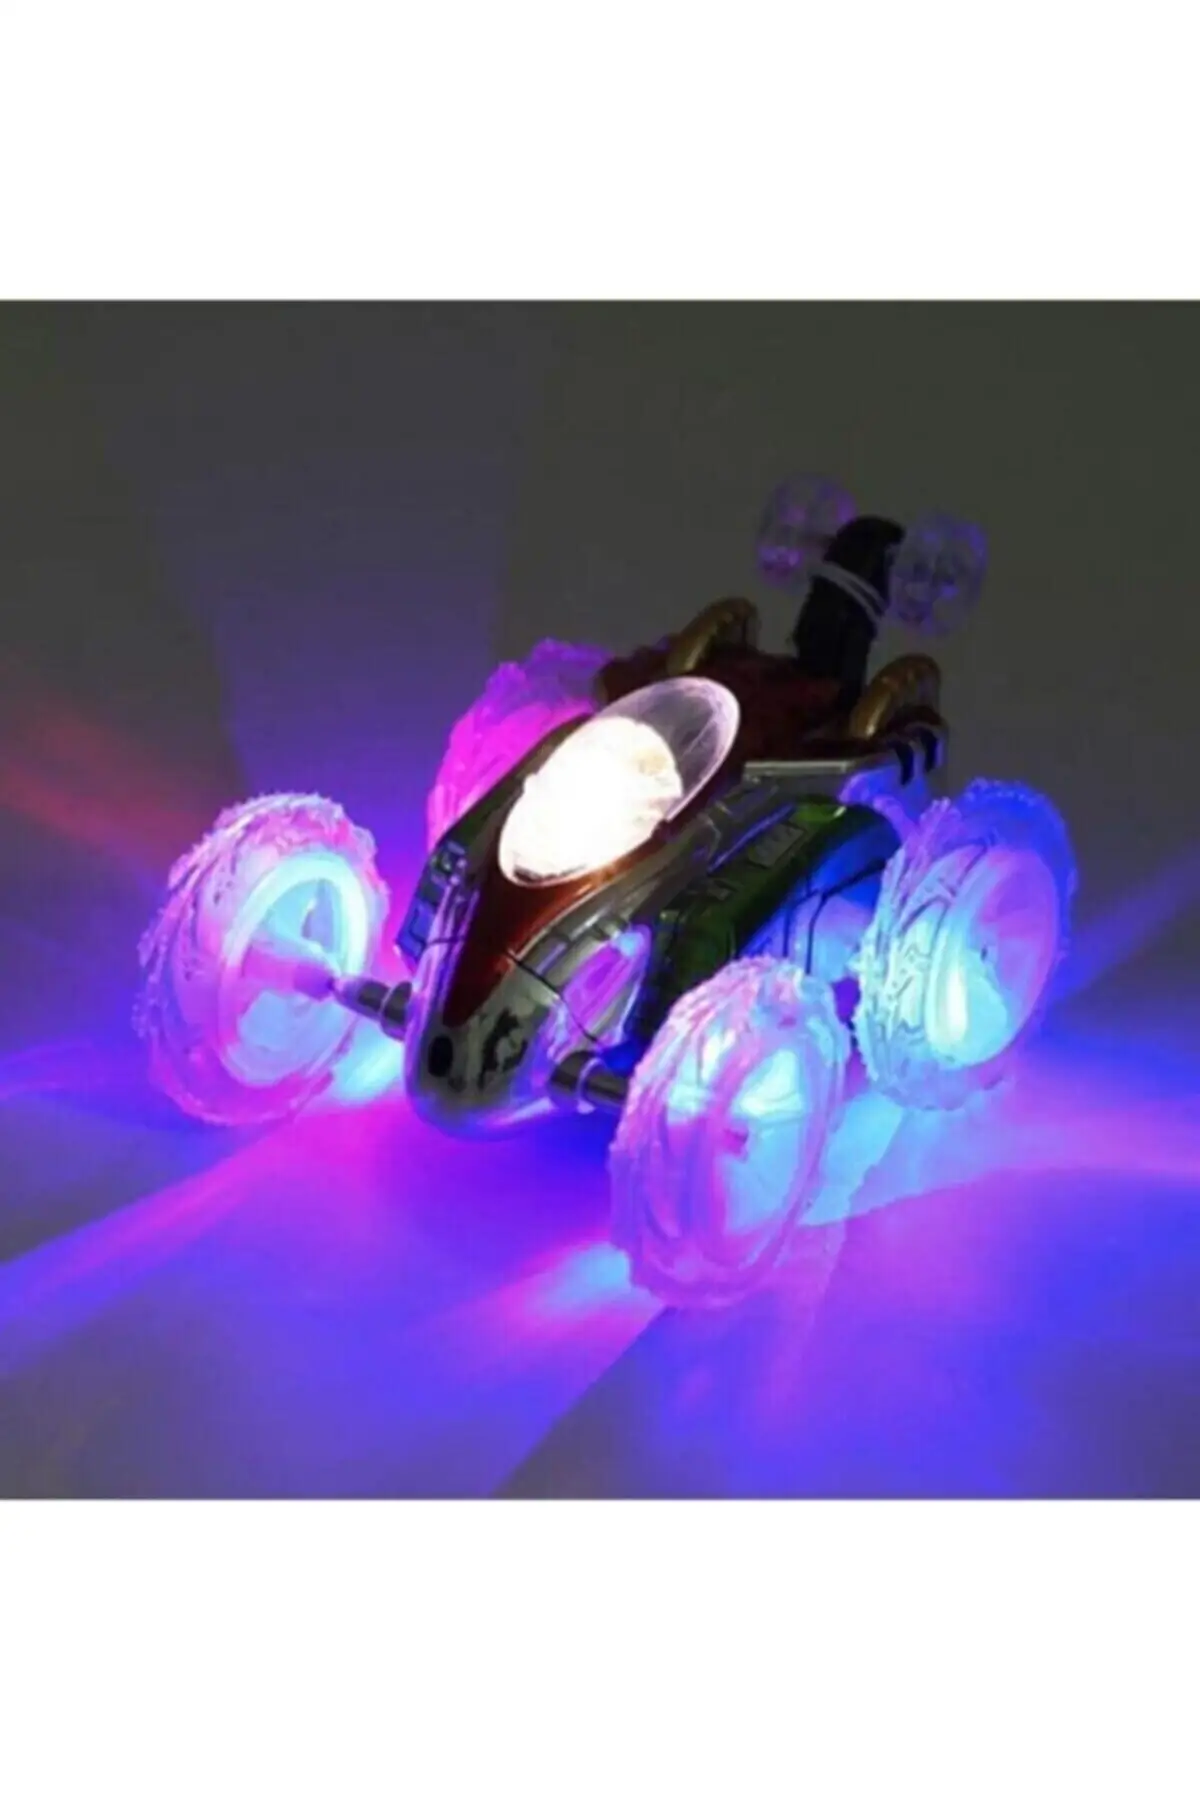 

Remote Controlled Illuminated Tumble Scorer Acrobat Car Toy